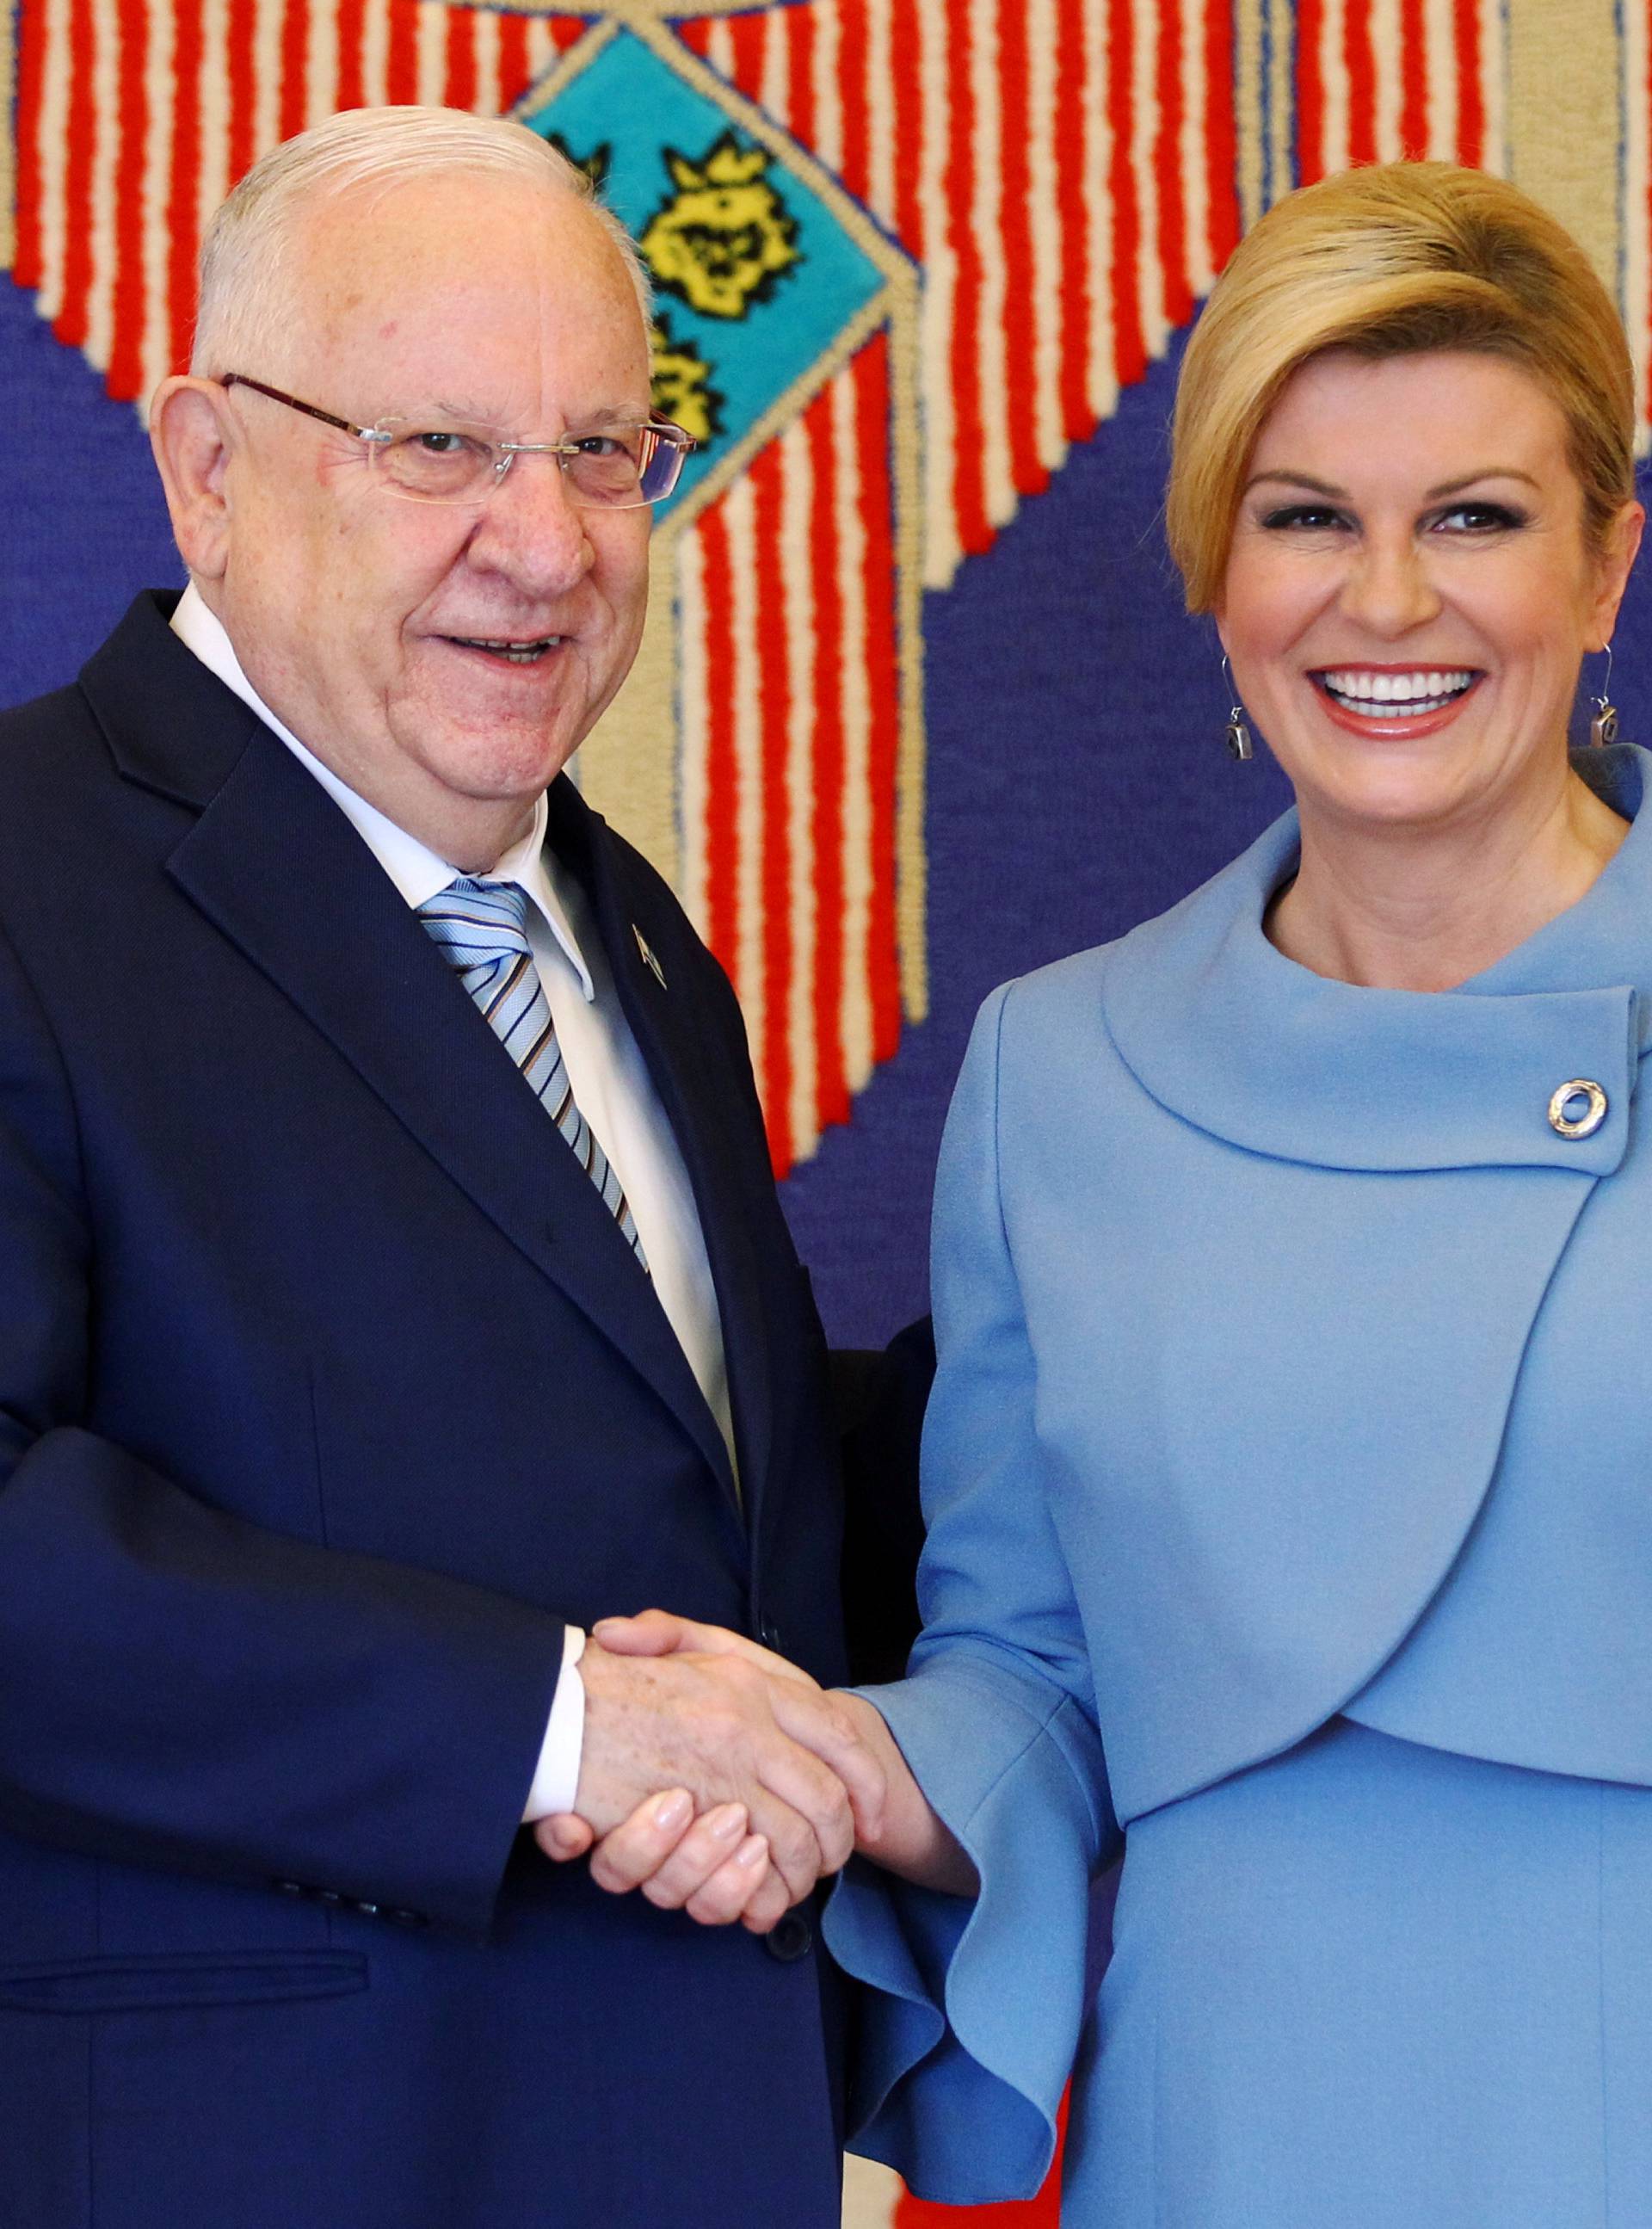 Croatia's President Kolinda Grabar-Kitarovic shakes hands with Israel's President Reuven Rivlin in Zagreb